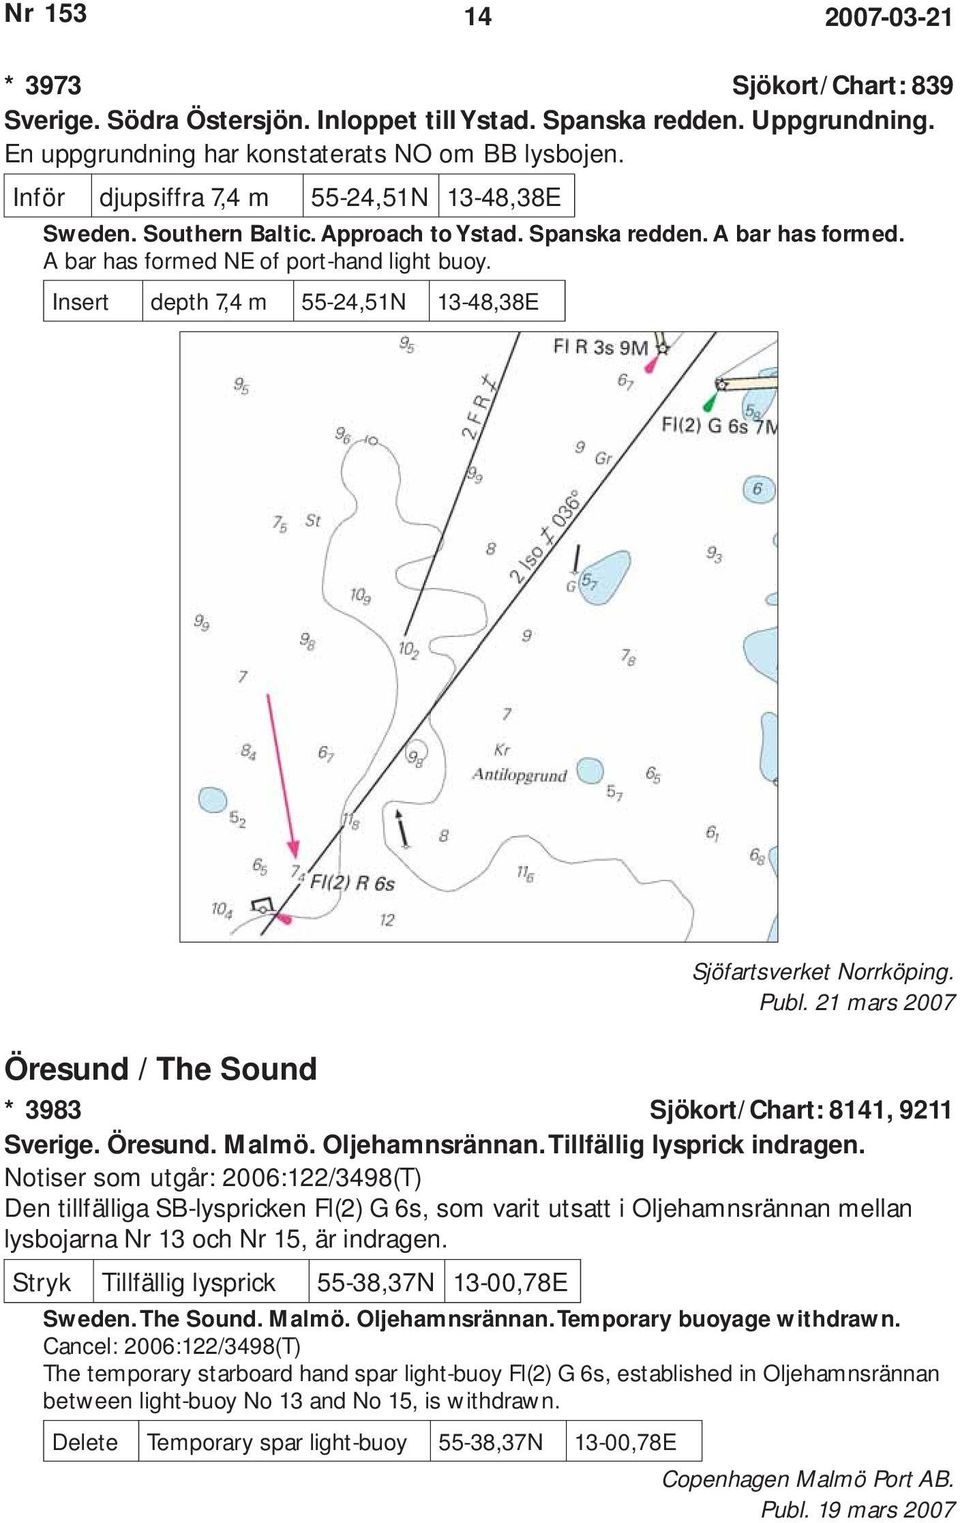 Insert depth 7,4 m 55-24,51N 13-48,38E Sjöfartsverket Norrköping. Öresund / The Sound * 3983 Sjökort/Chart: 8141, 9211 Sverige. Öresund. Malmö. Oljehamnsrännan. Tillfällig lysprick indragen.